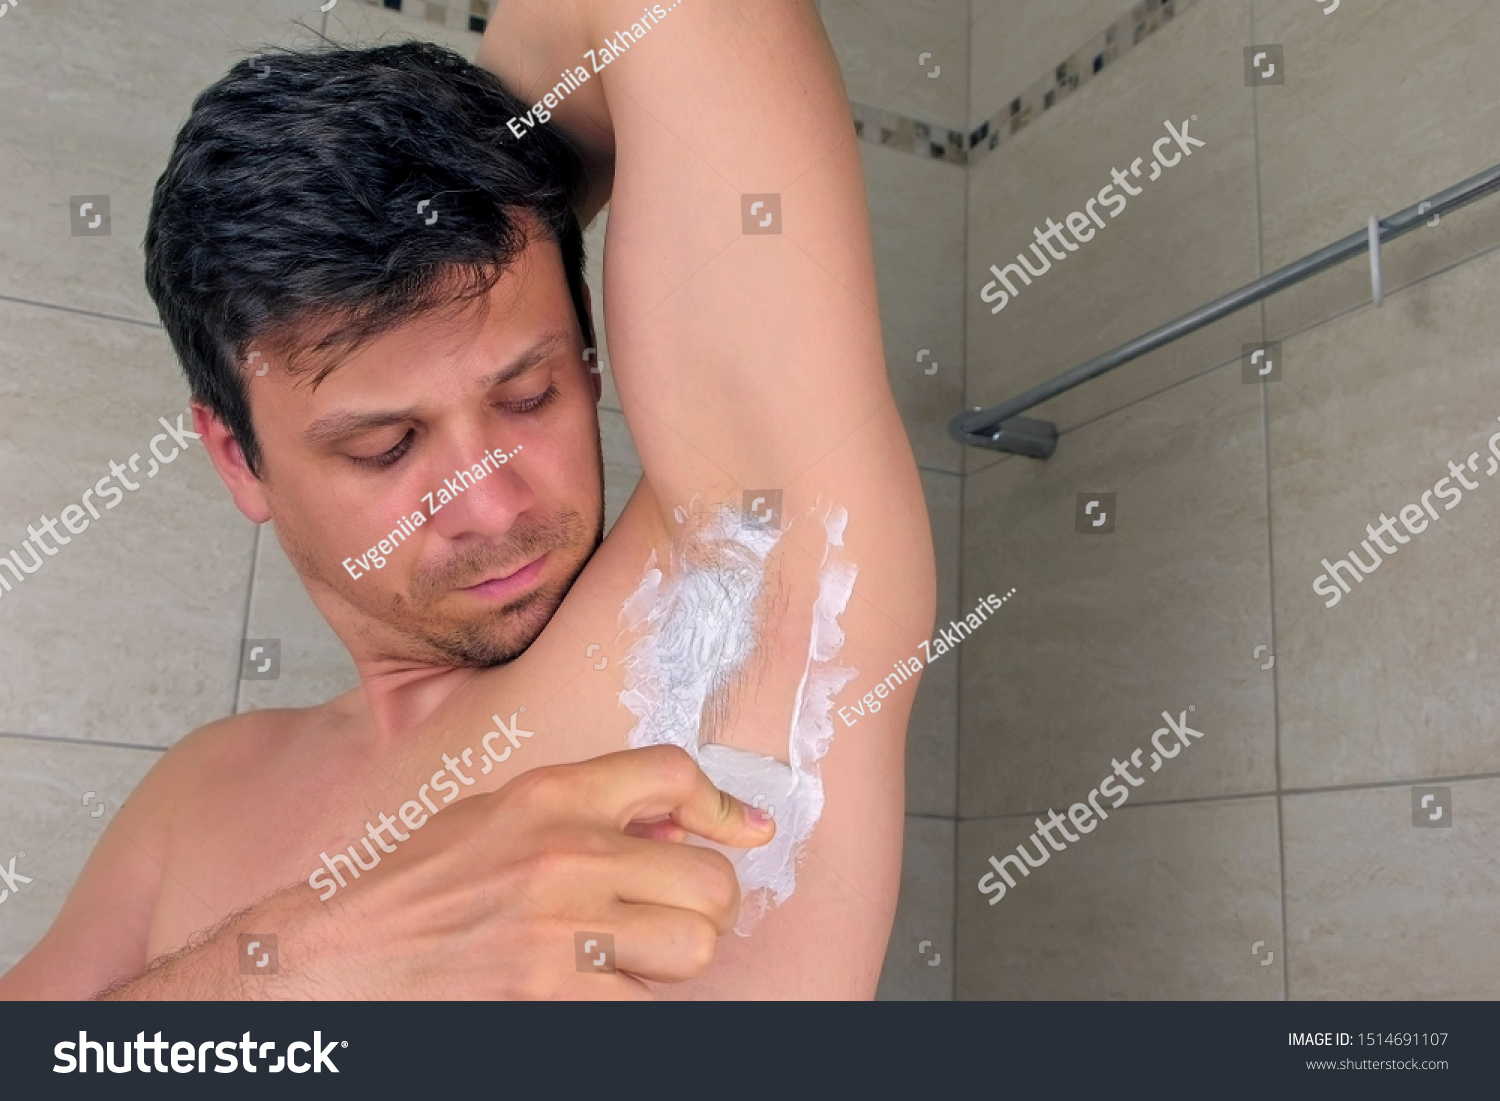 бритья члена что это для мужчины фото 34